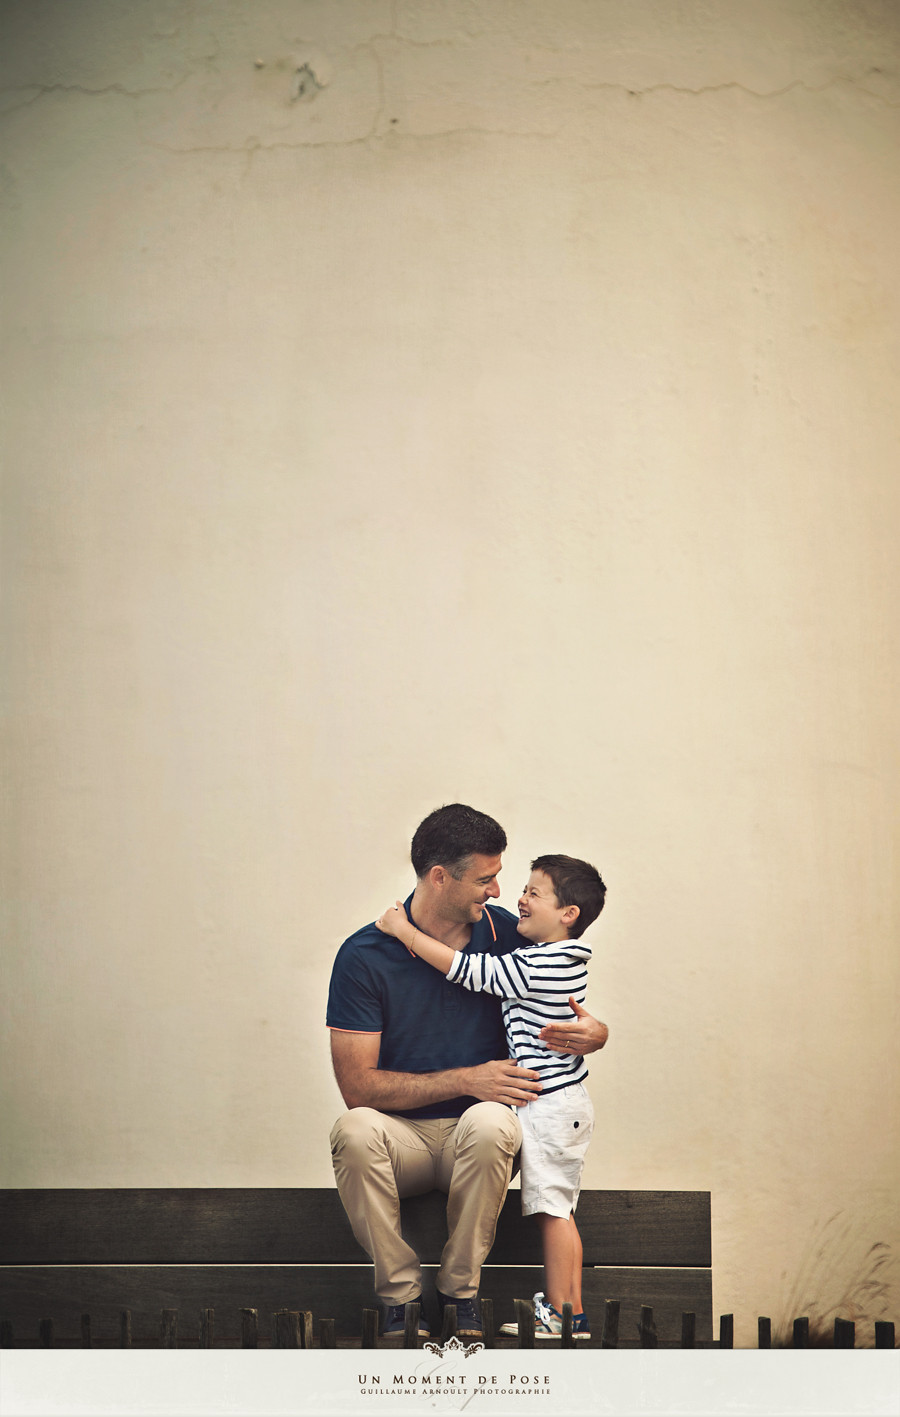 Séance famille - Guillaume Arnoult photographe - photographe séance famille nantes - 2013-8